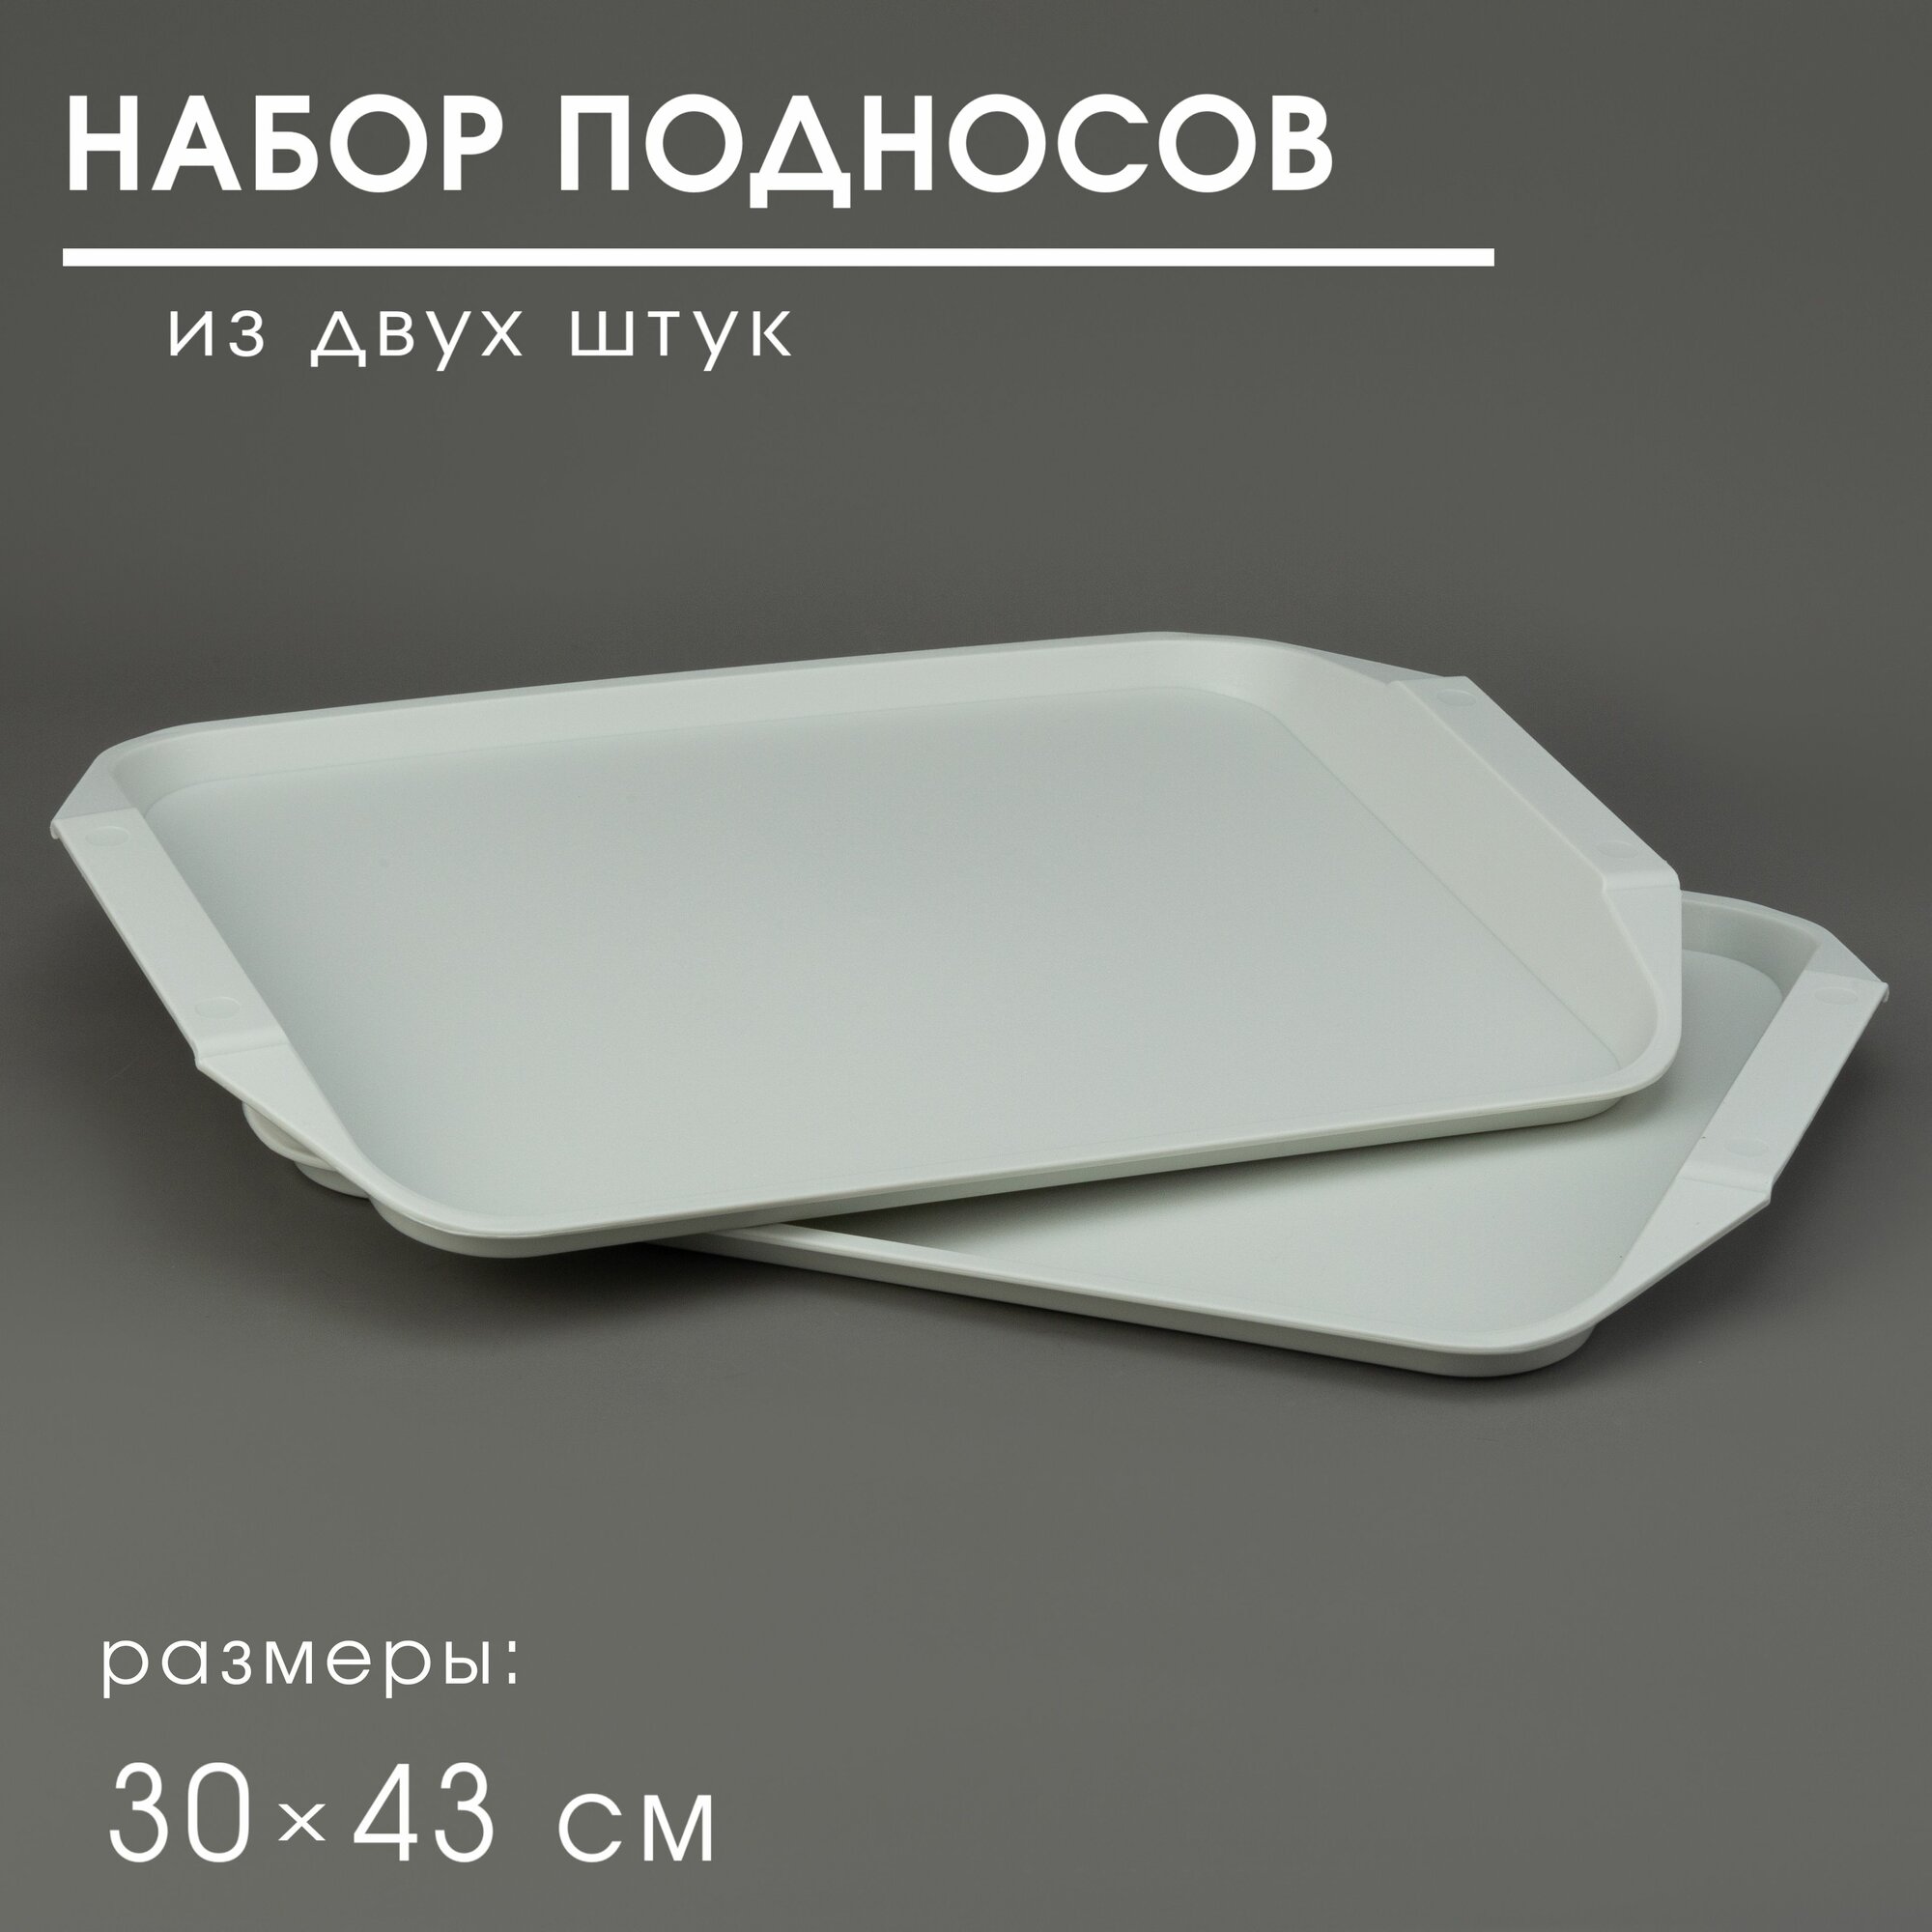 Поднос пластиковый столовый 30*43см Martika комплект 2 шт